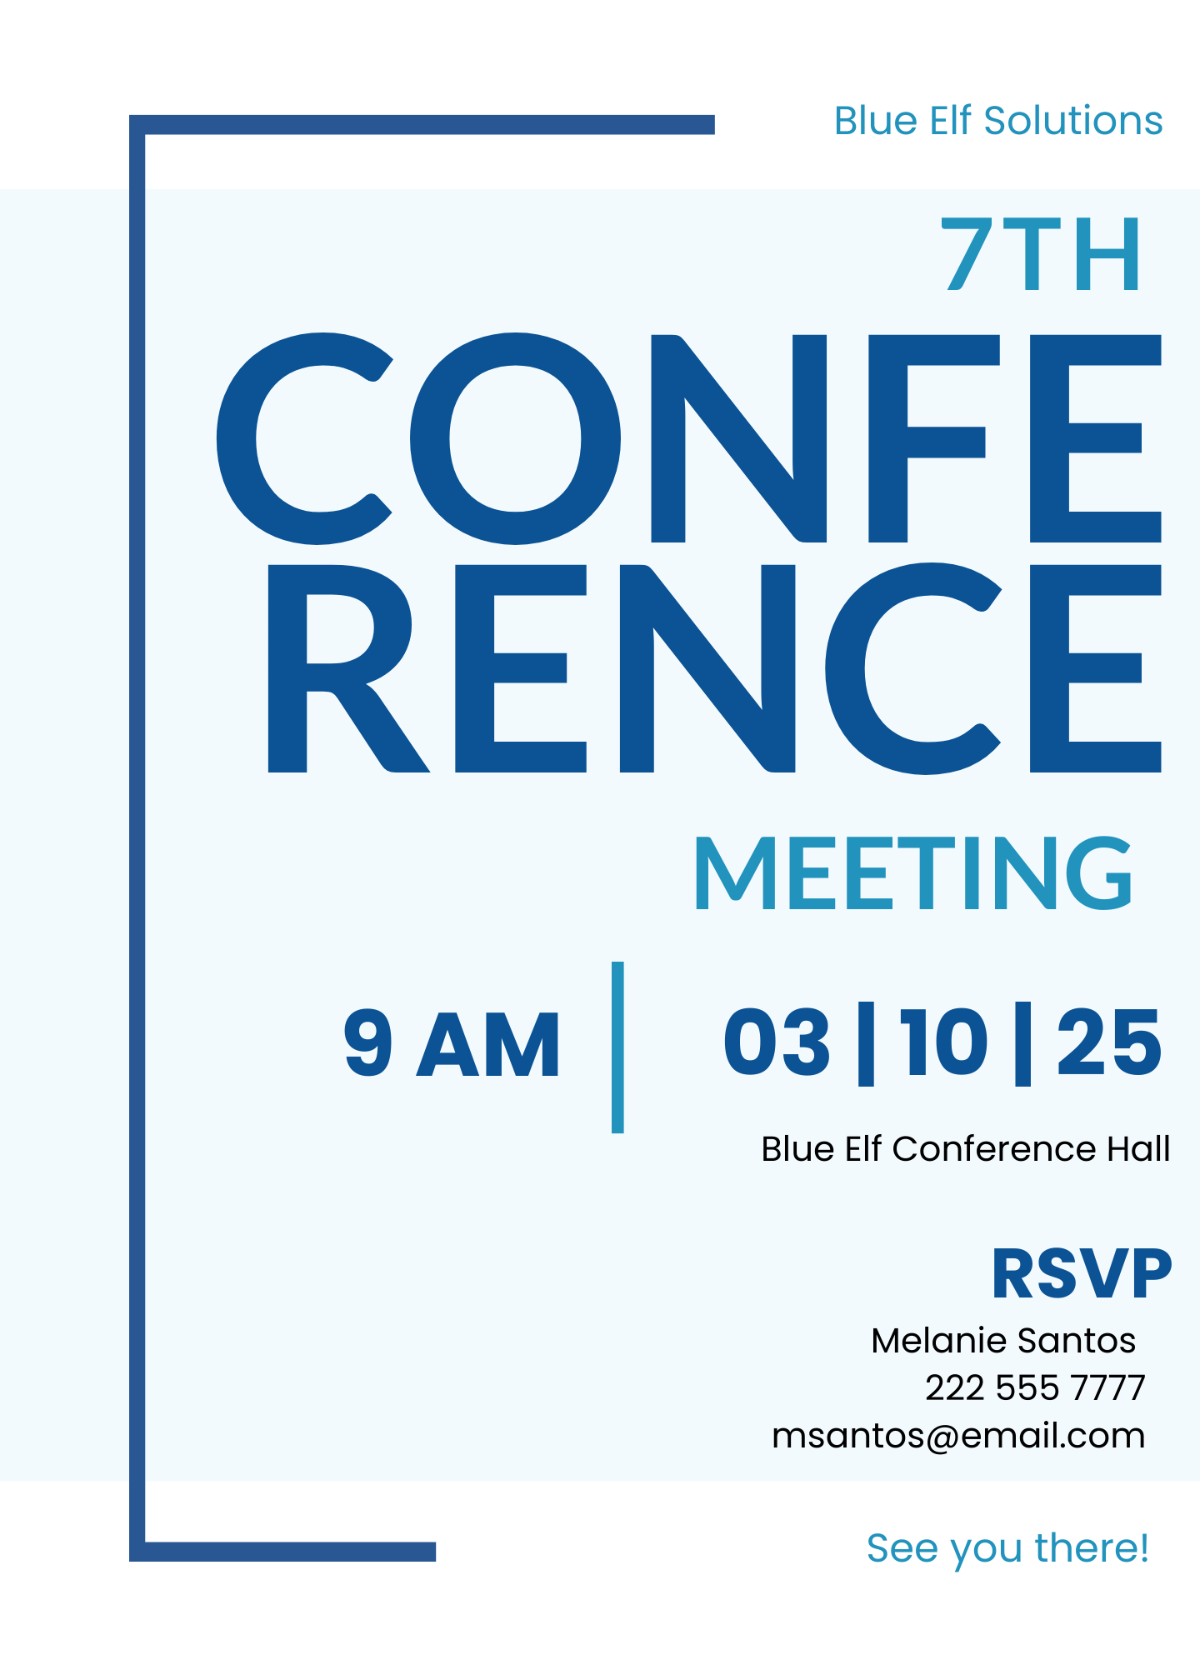 Conference Invitation